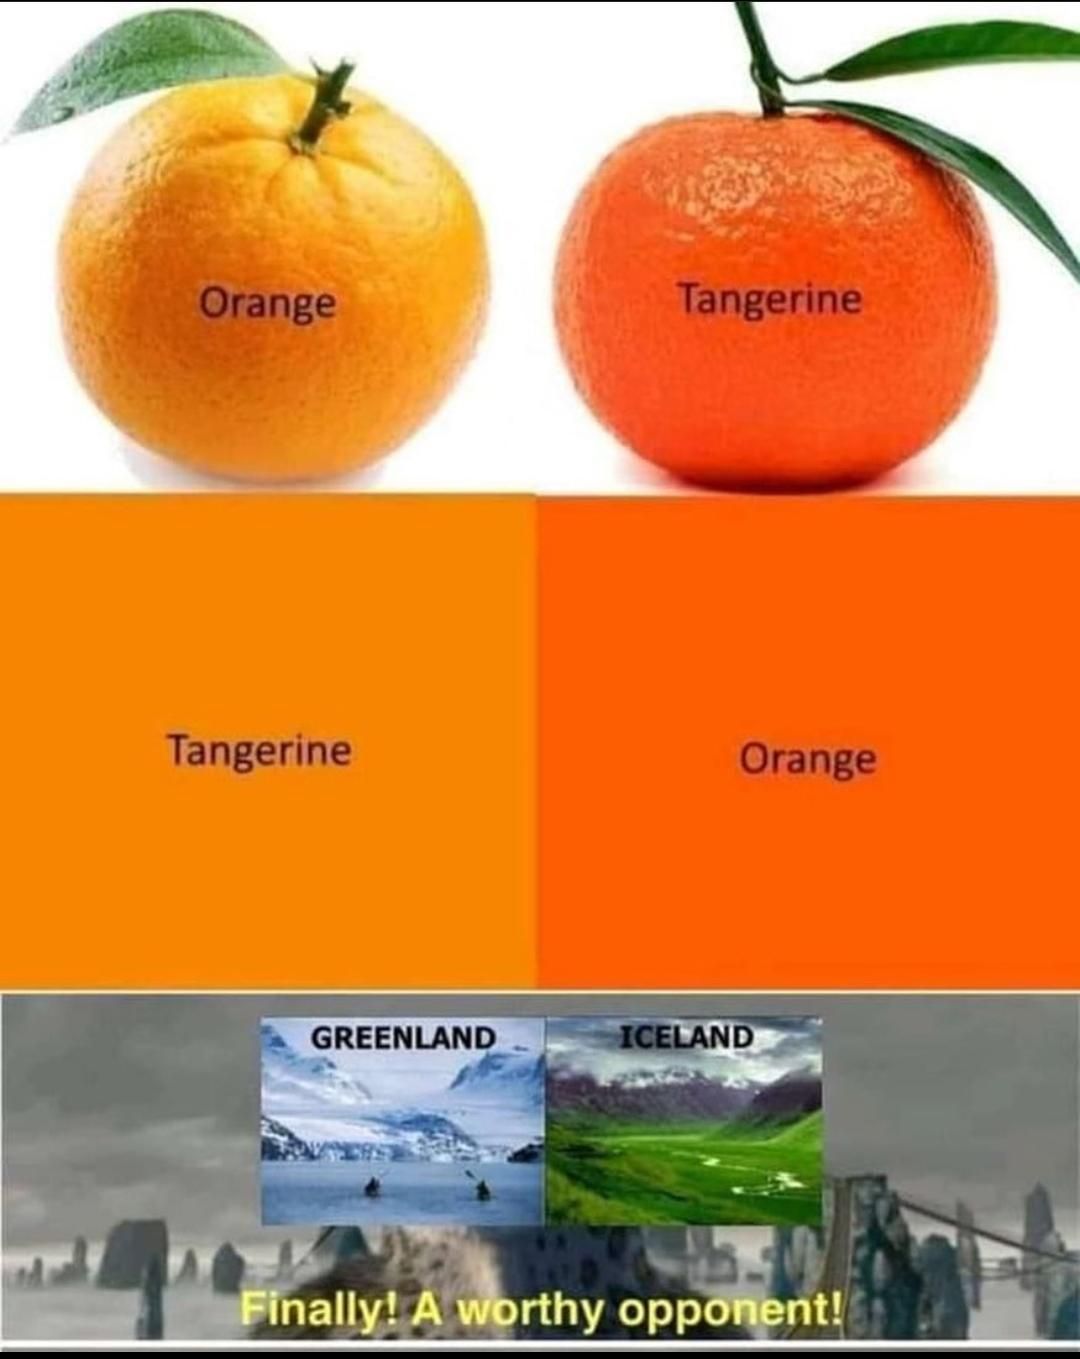 Ah yes, orange